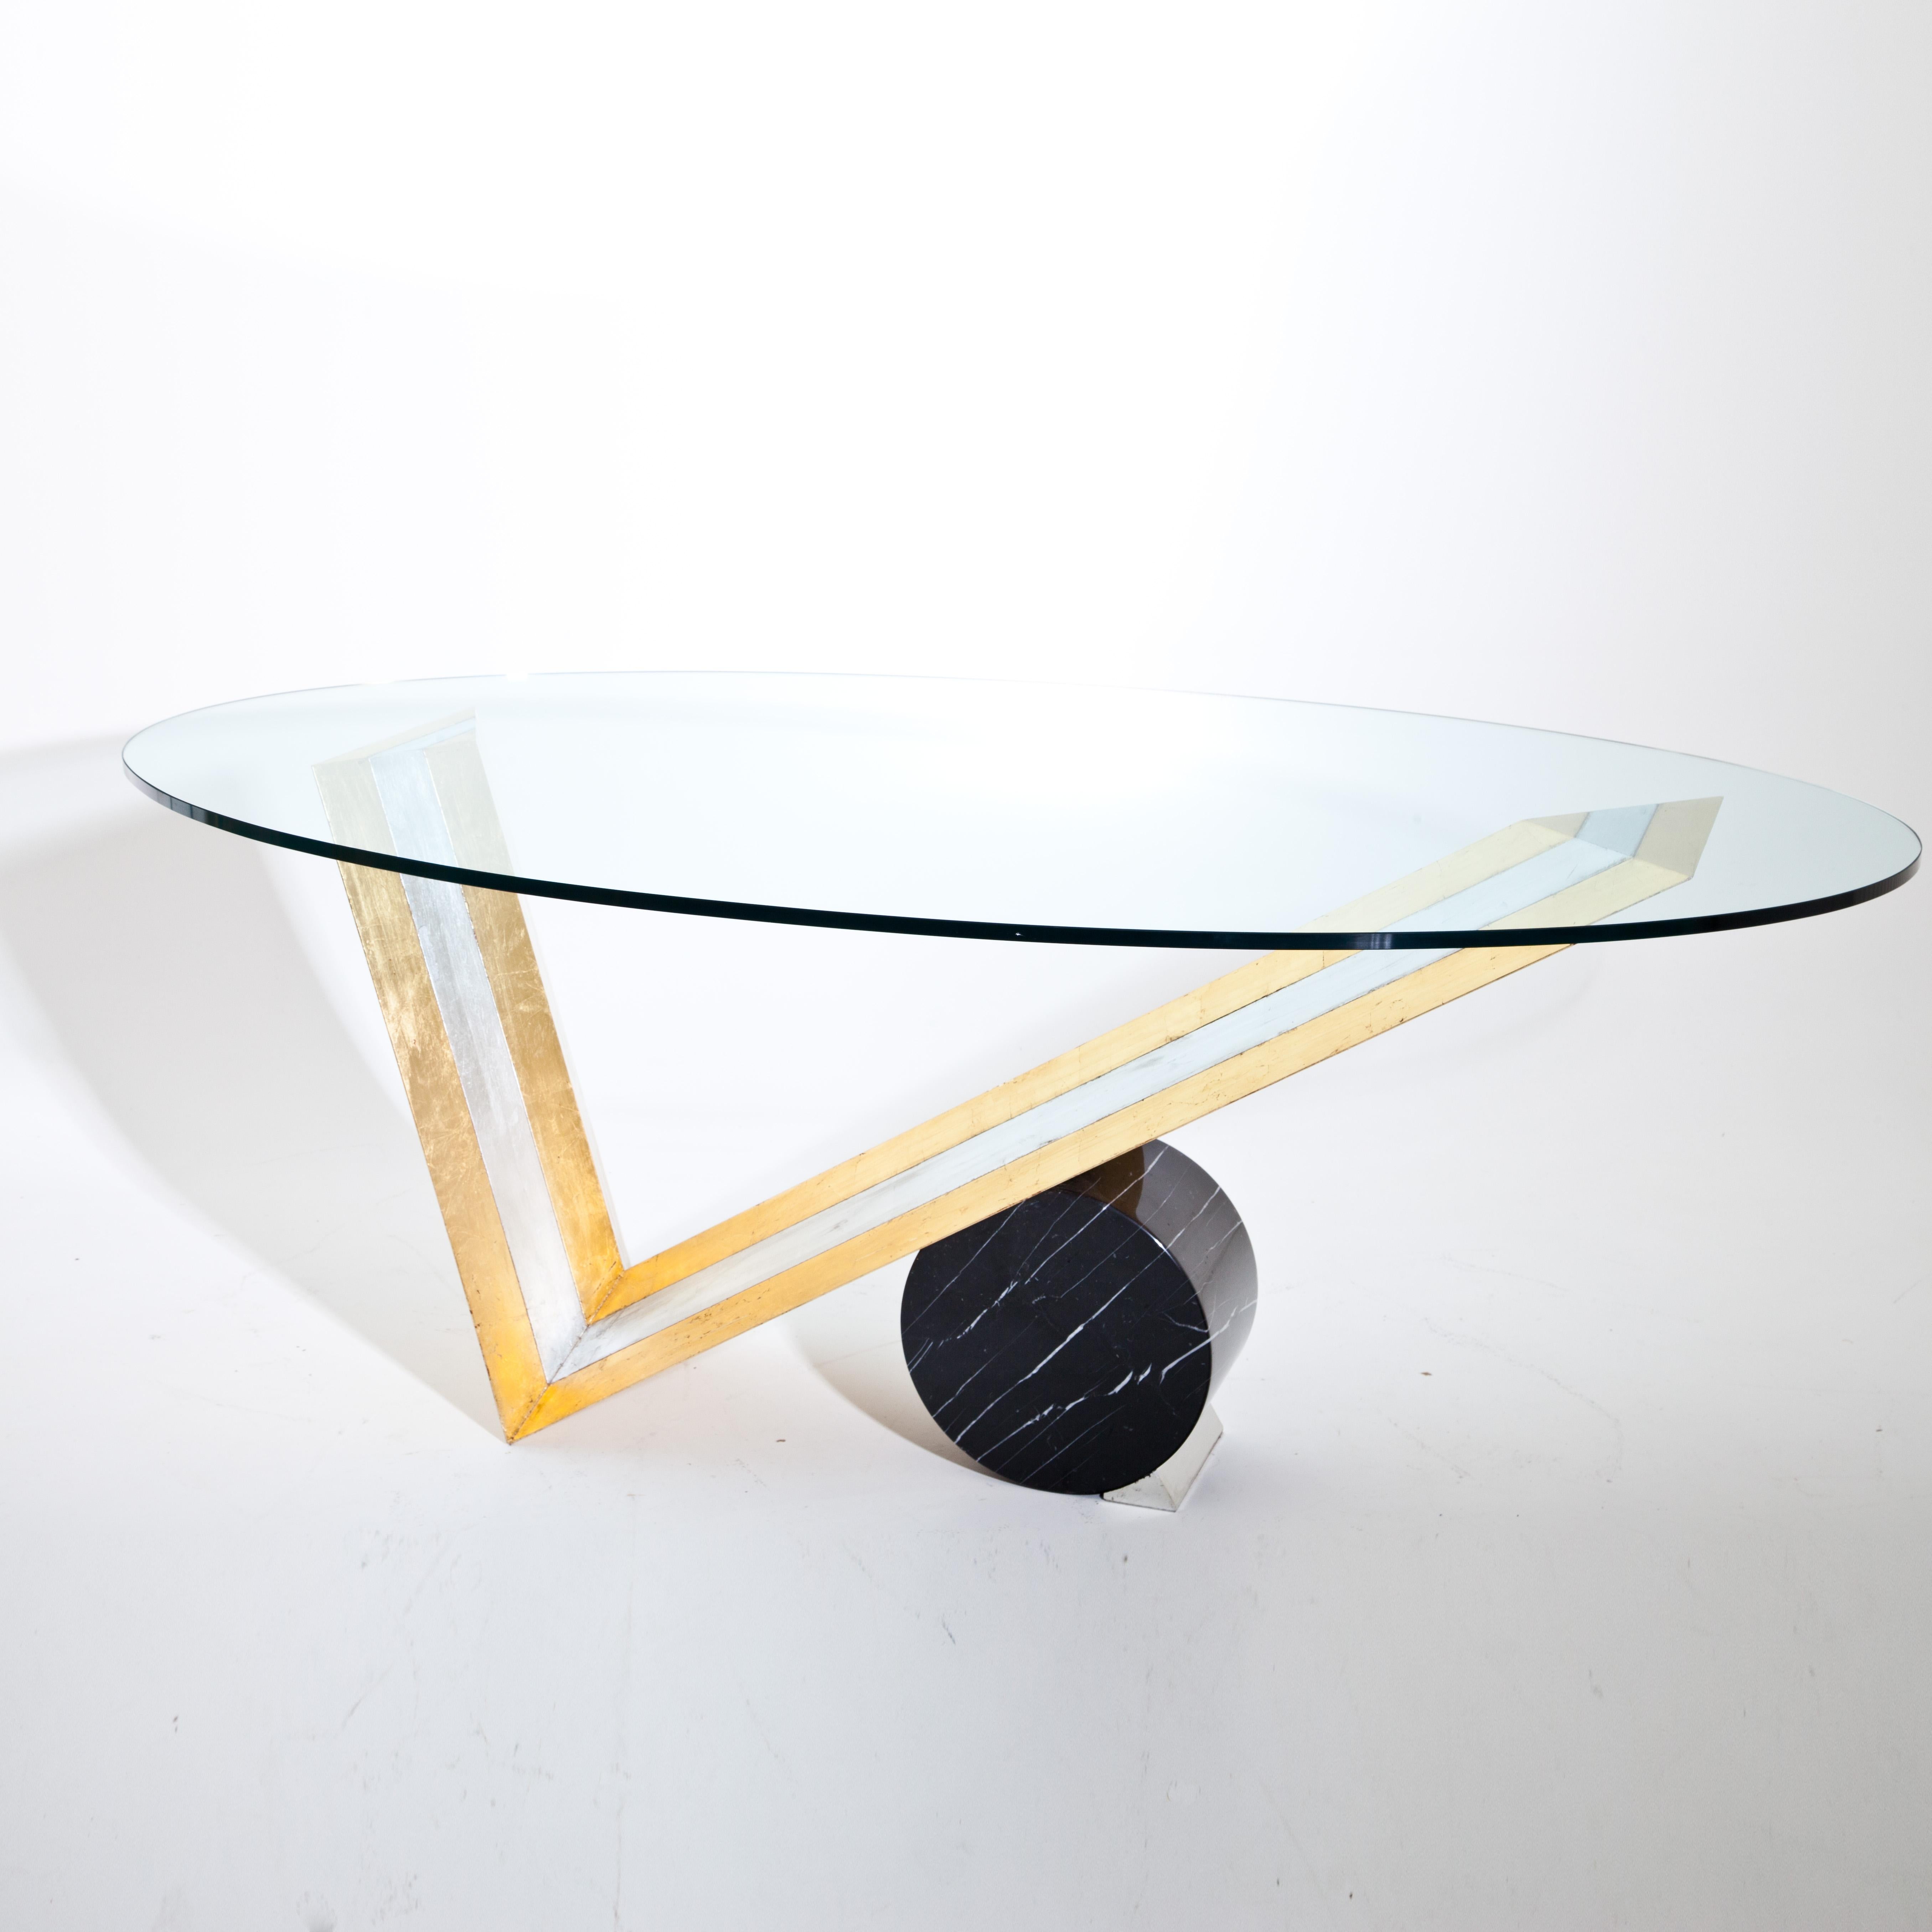 Großer Tisch mit ovaler Glasplatte auf einem V-förmigen Holzgestell mit einem großen schwarzen Marmorzylinderblock. Der Holzrahmen ist in Silber und Gold patiniert.